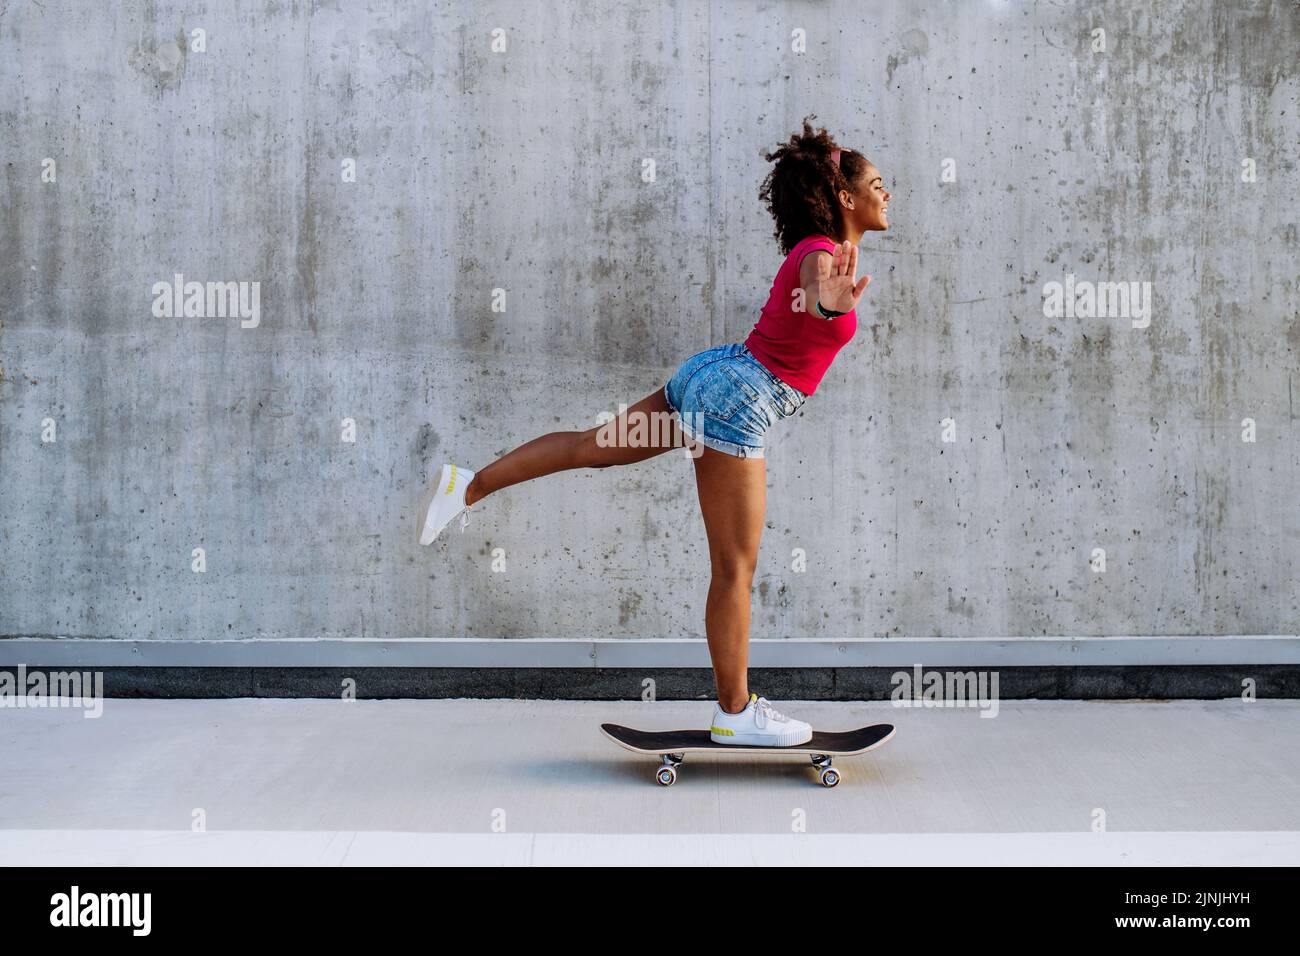 Adolescente multiraciale à cheval sur un skateboard devant un mur en béton, debout dans une jambe, en équilibre. Vue latérale. Banque D'Images